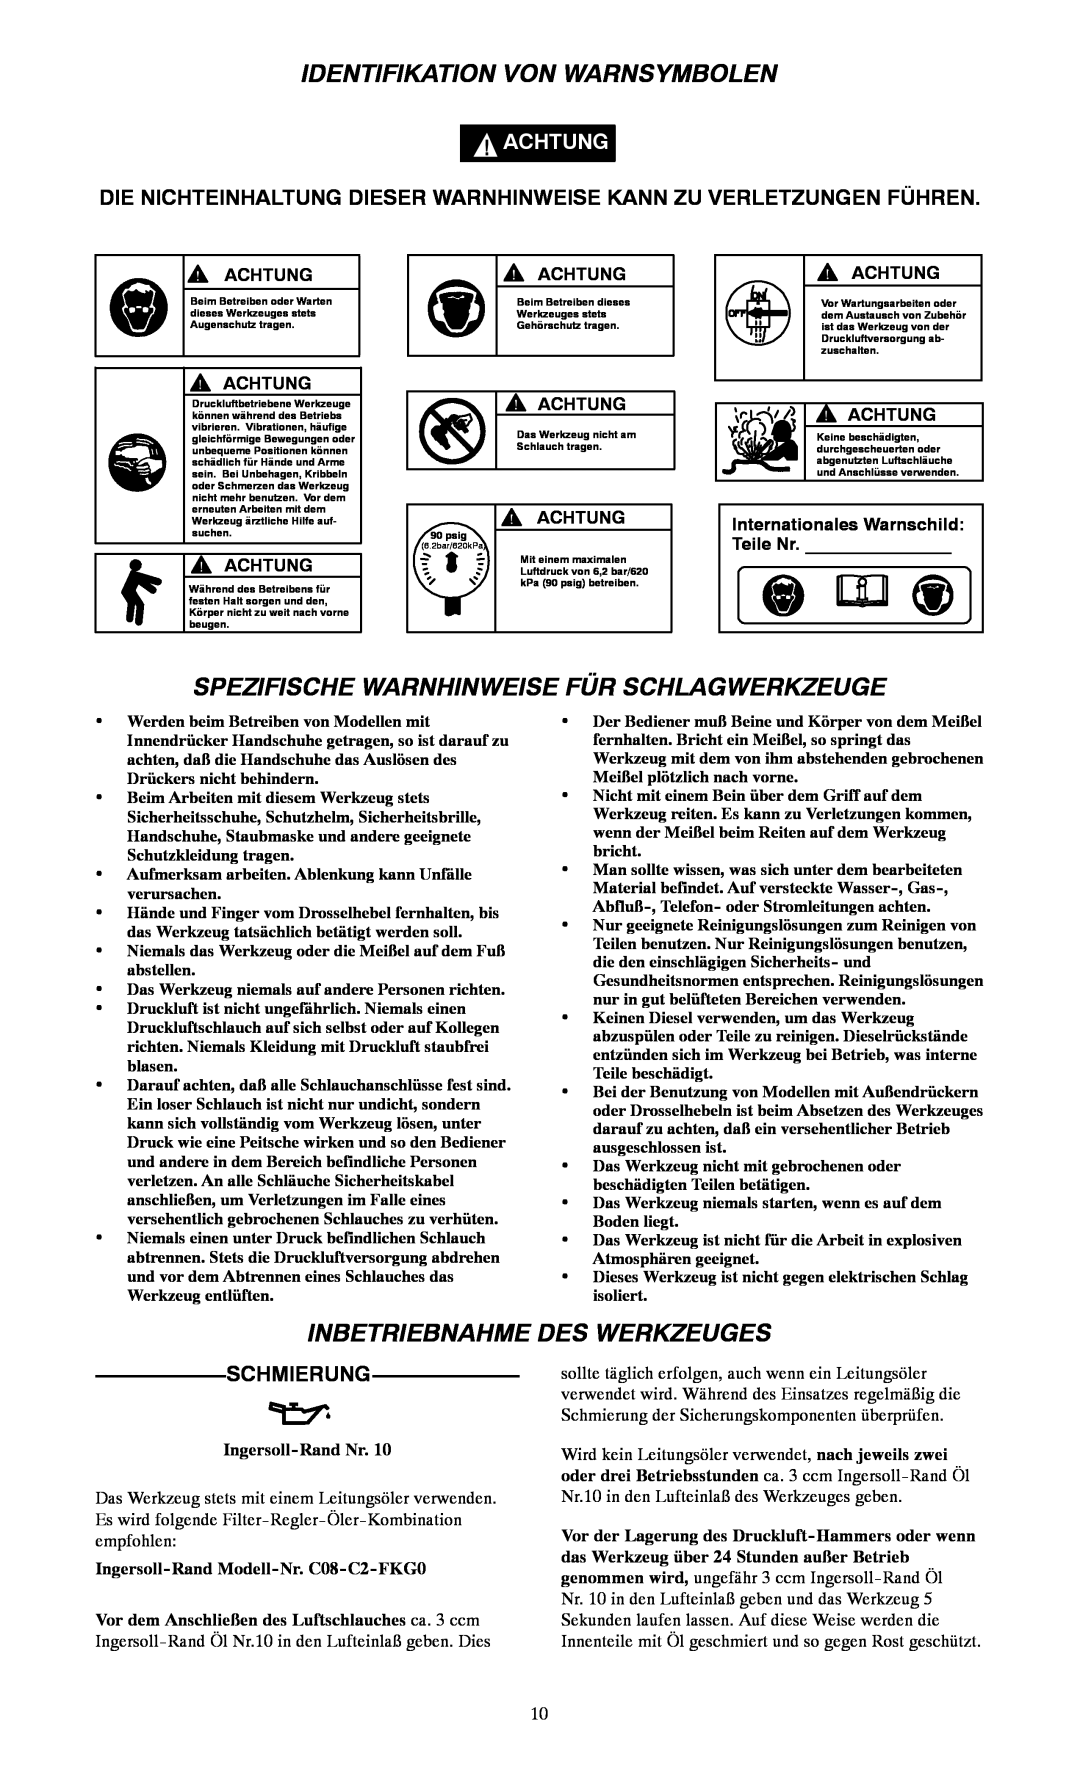 Ingersoll-Rand 115, 116 Identifikation Von Warnsymbolen, Spezifische Warnhinweise Für Schlagwerkzeuge, Schmierung, Achtung 